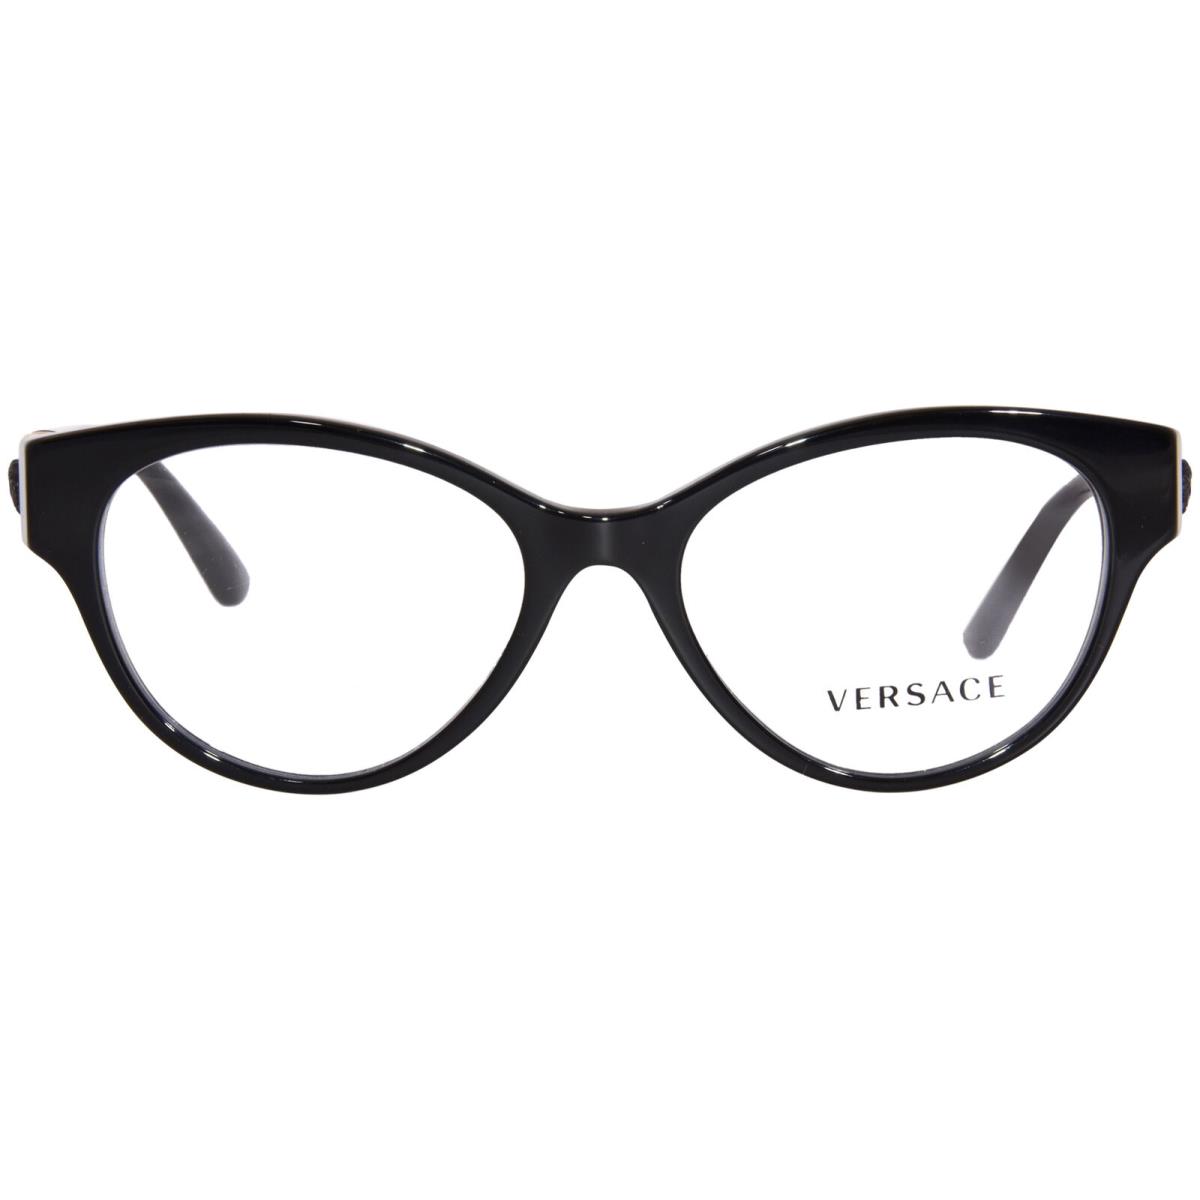 Versace VE3313 GB1 Eyeglasses Women`s Black Full Rim Round Shape 54mm